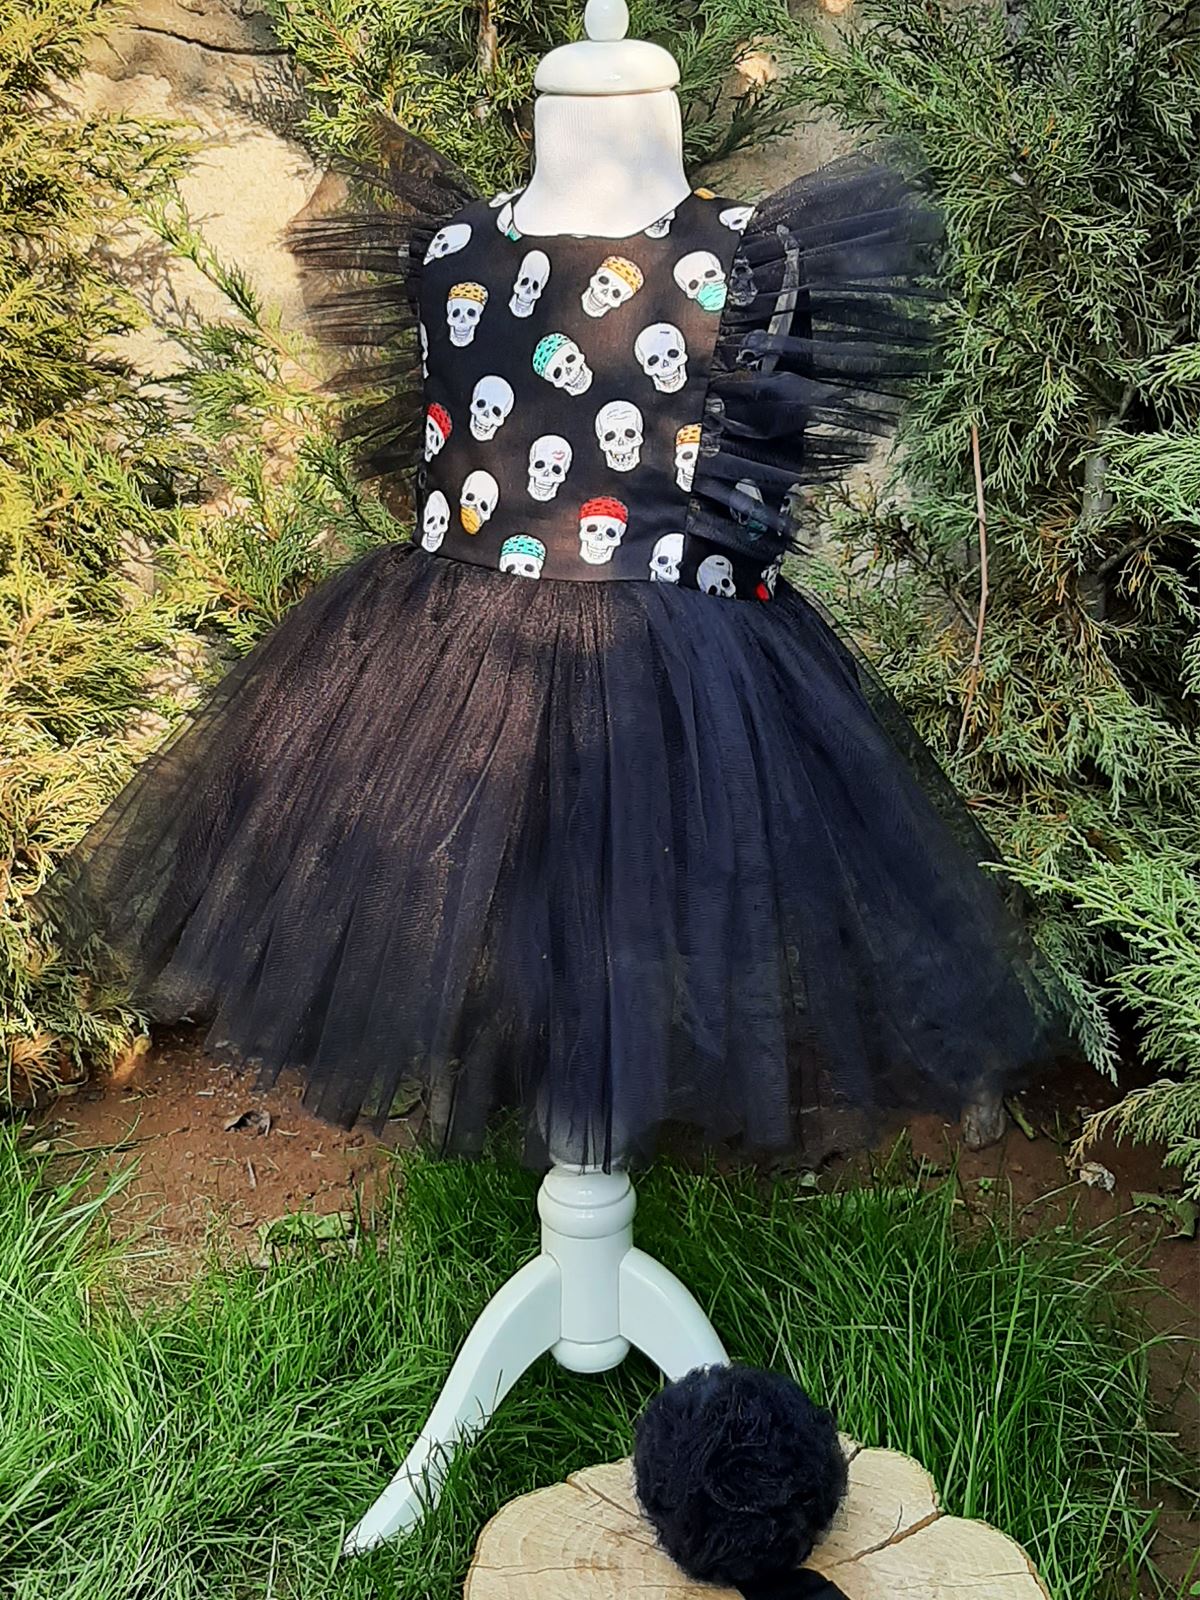 Shecco Babba Kız Çocuk Tül Detaylı Desenli Tütü Elbise Bandana Takım 6-10 Yaş Siyah-Beyaz